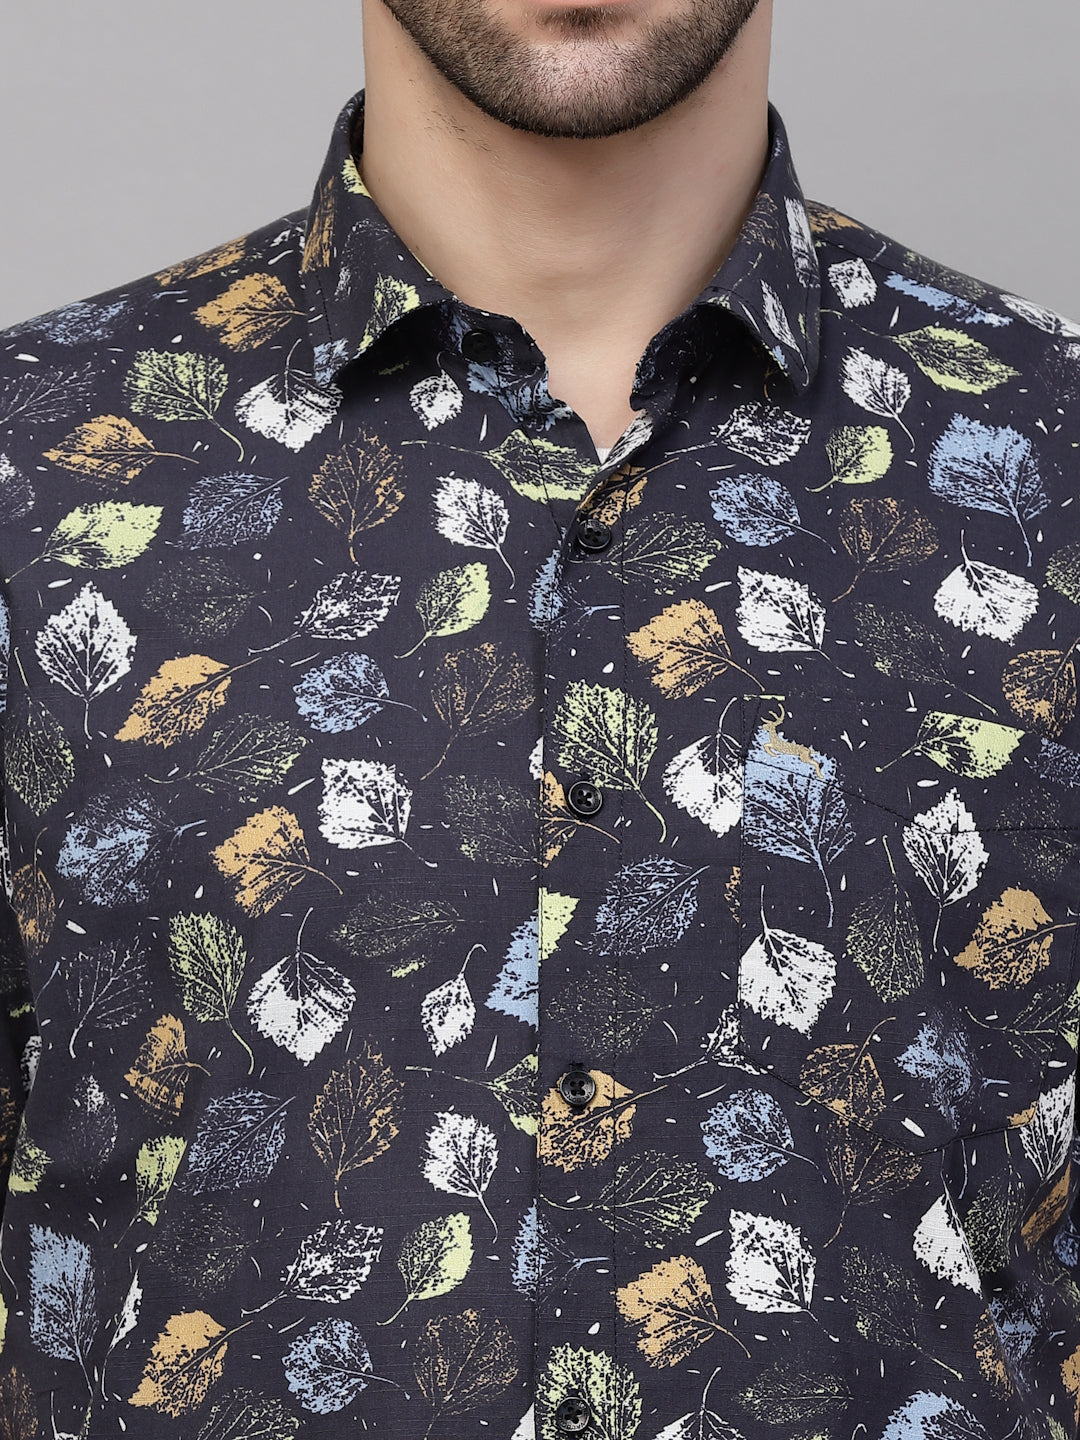 Valbone Men’s Black Digital Leaves Printed Regular Fit Casual Shirt Half Sleeves